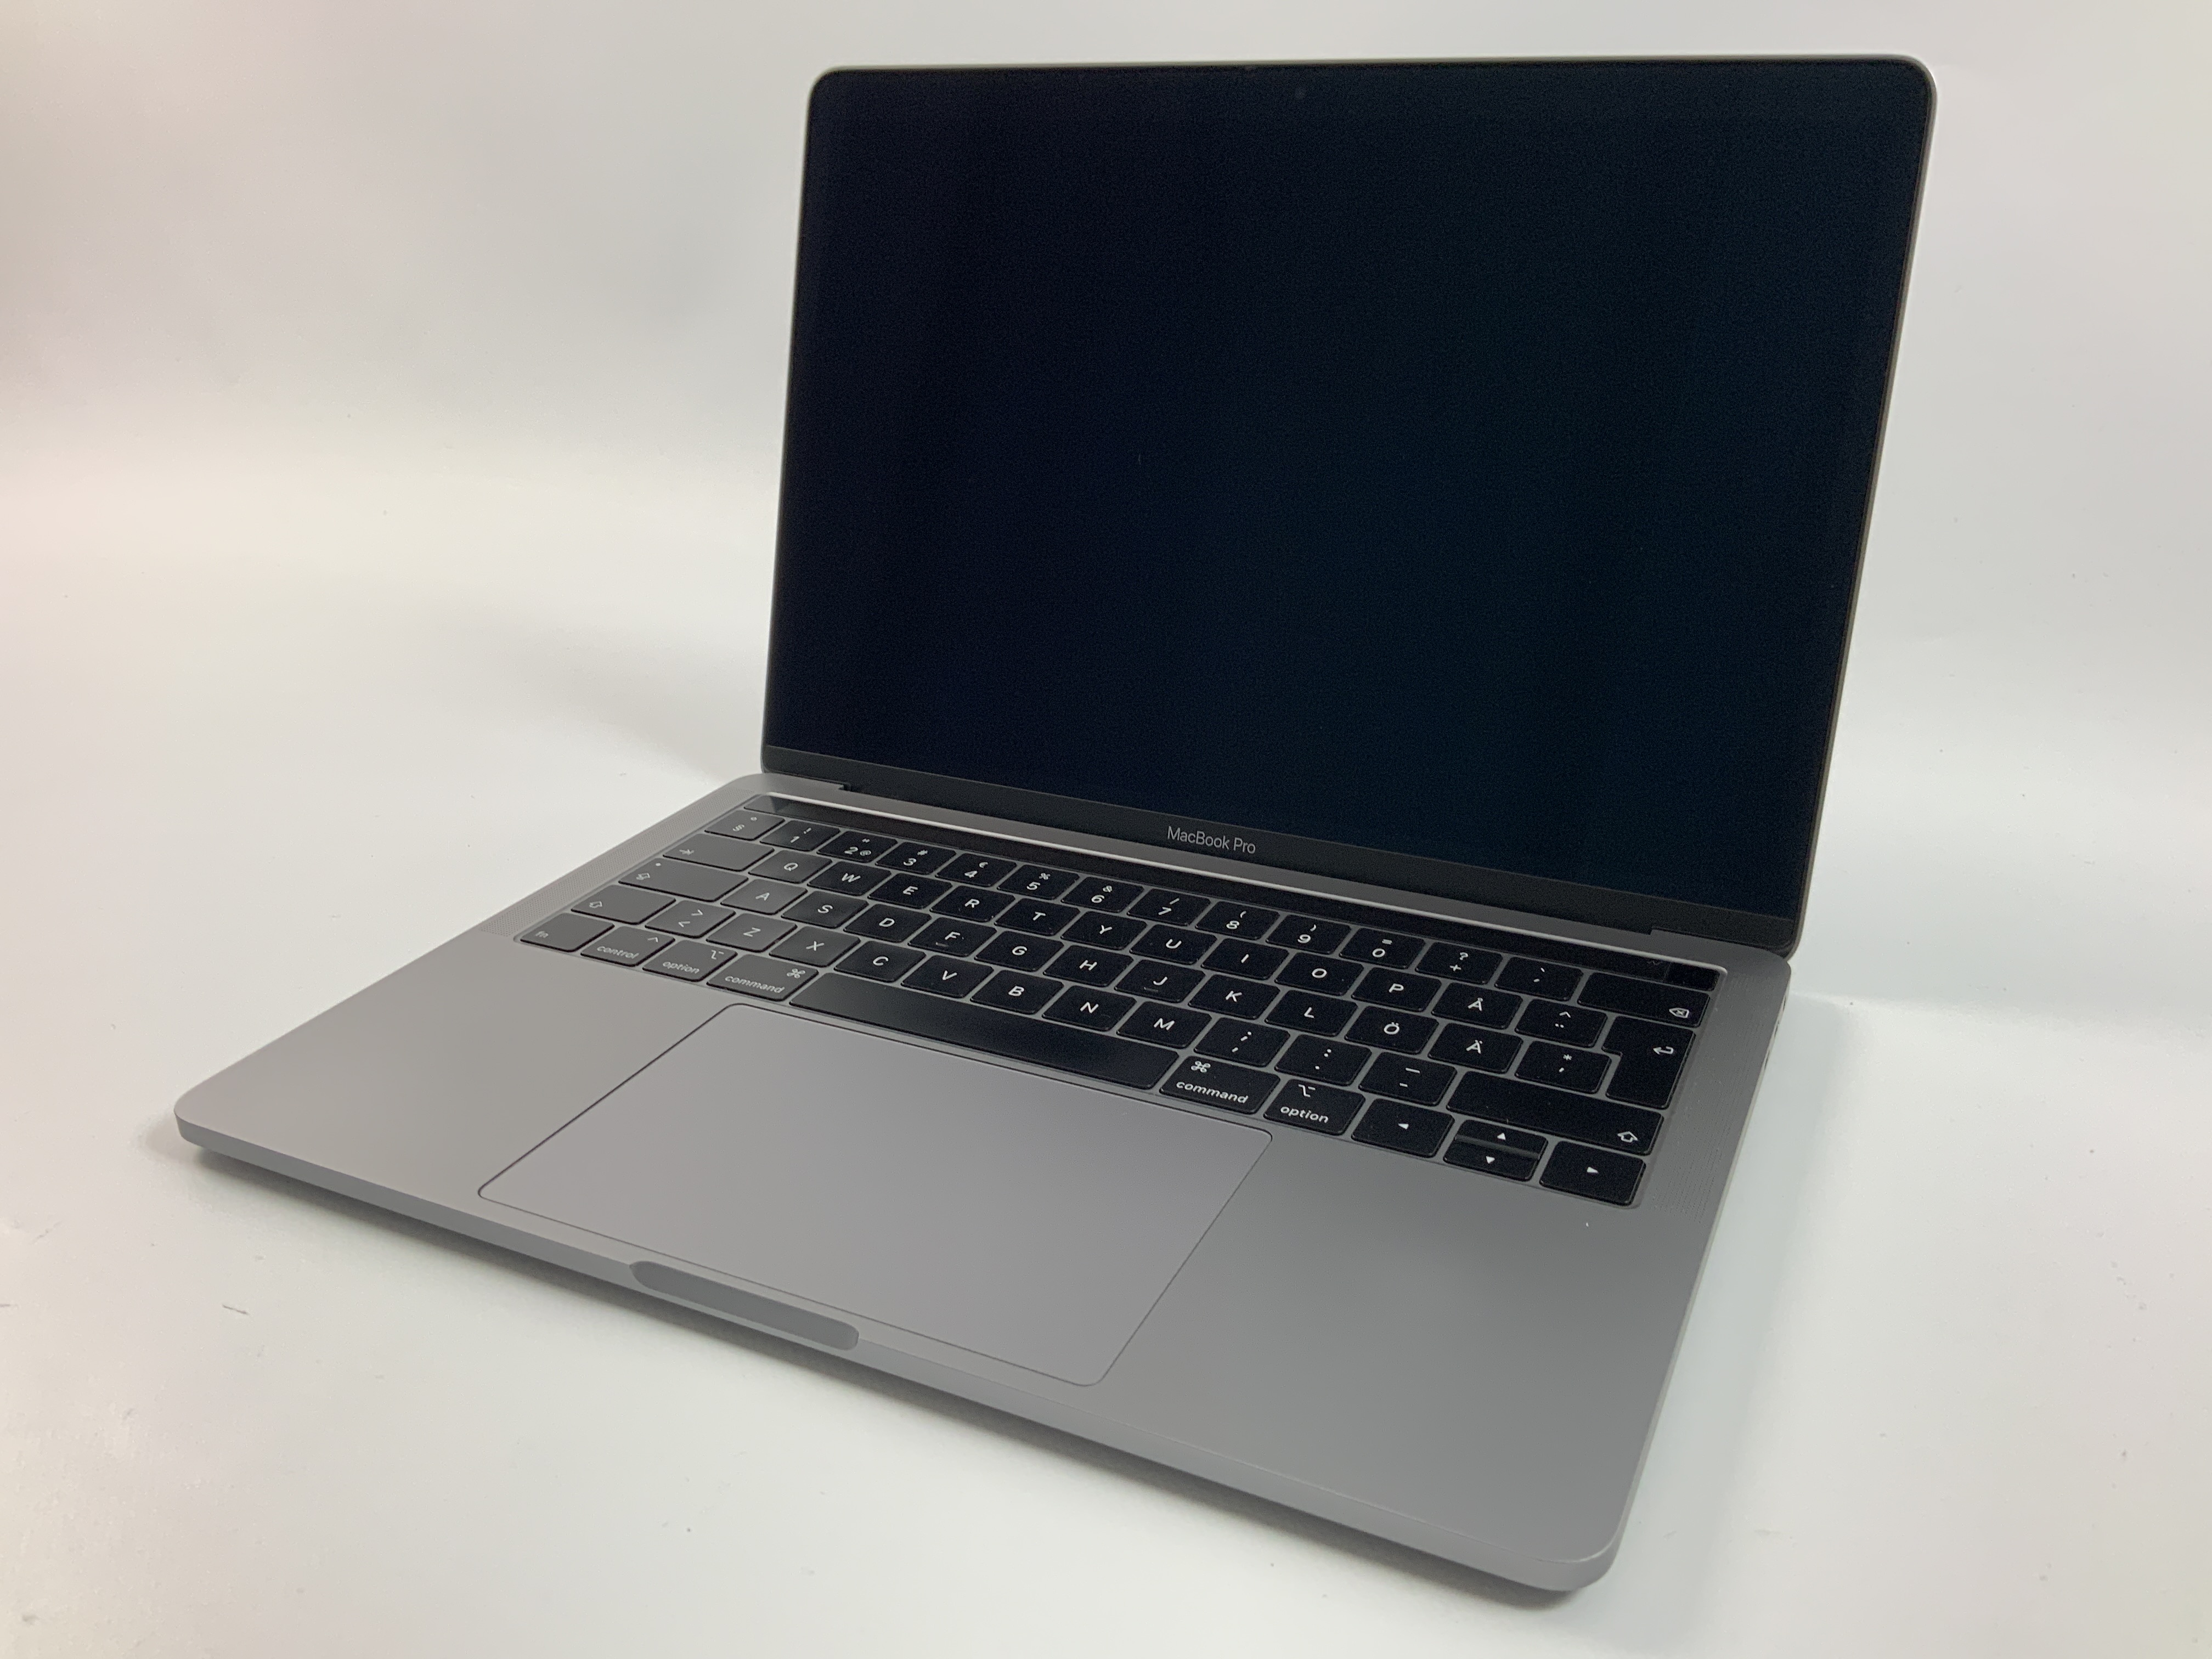 MacBook Pro 13" 4TBT Mid 2019 (Intel Quad-Core i7 2.8 GHz 16 GB RAM 256 GB SSD), Space Gray, Intel Quad-Core i7 2.8 GHz, 16 GB RAM, 256 GB SSD, bild 1